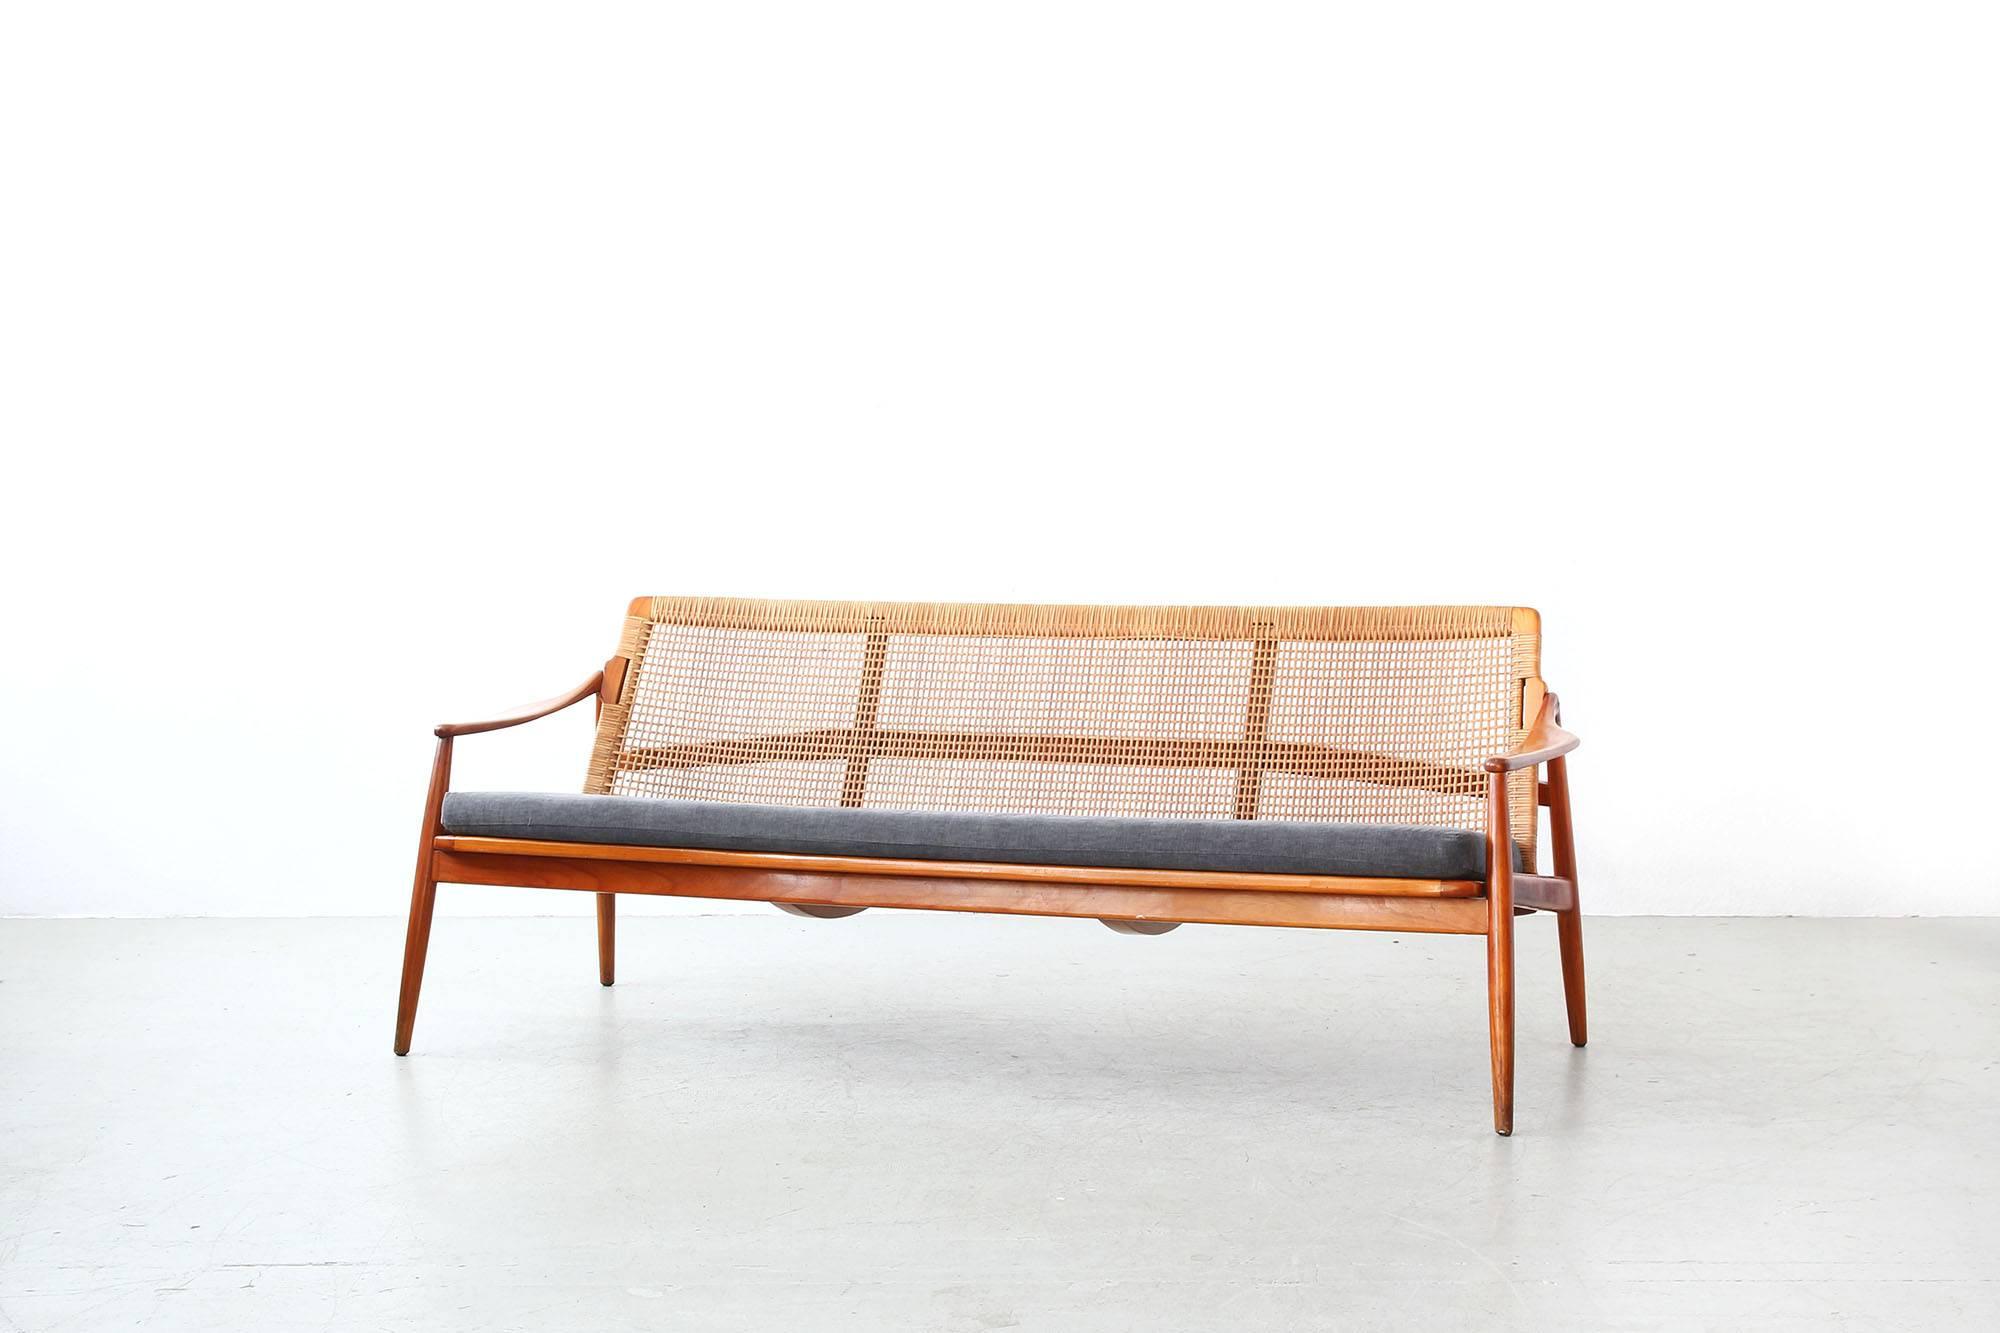 Schönes Sofa von Hartmut Lohmeyer für Wilkhahn, entworfen in den 1950er Jahren.
Das Sofa ist in einem ausgezeichneten Zustand mit nur geringen Gebrauchsspuren. Der Stock auf der Rückseite ist ohne Beschädigungen. Die Kissen wurden neu mit einem